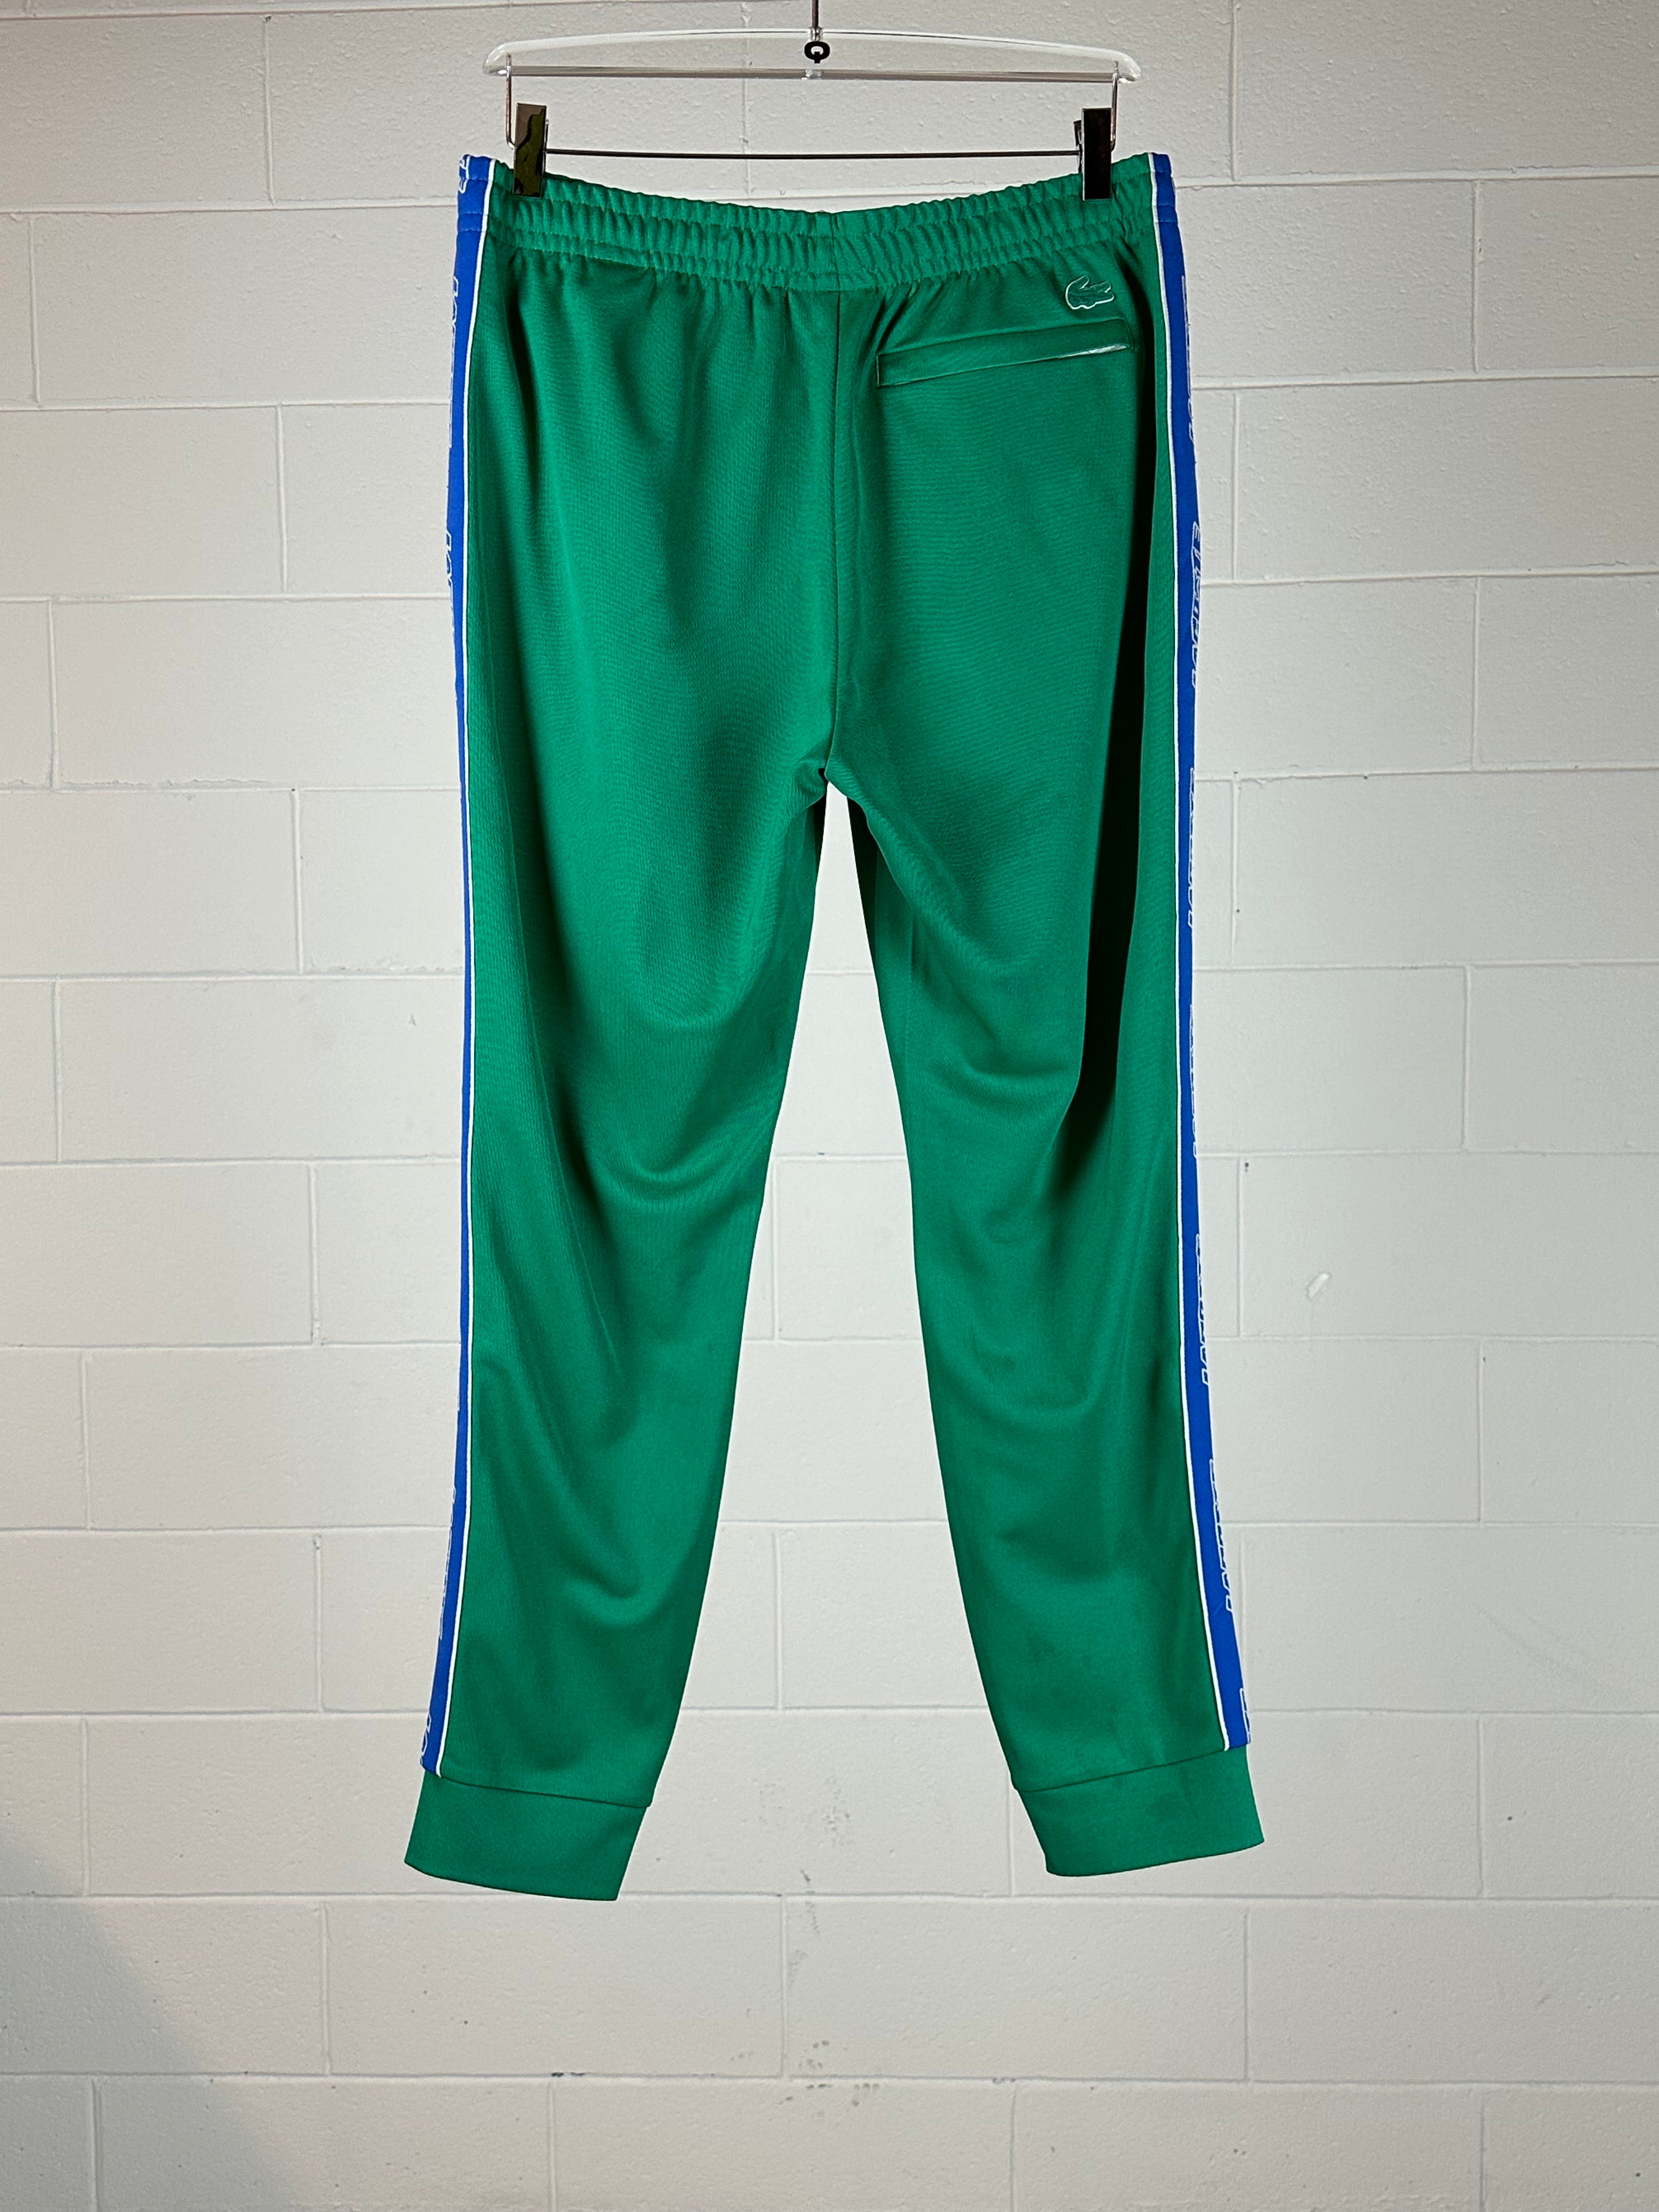 Emerald Sweatpants